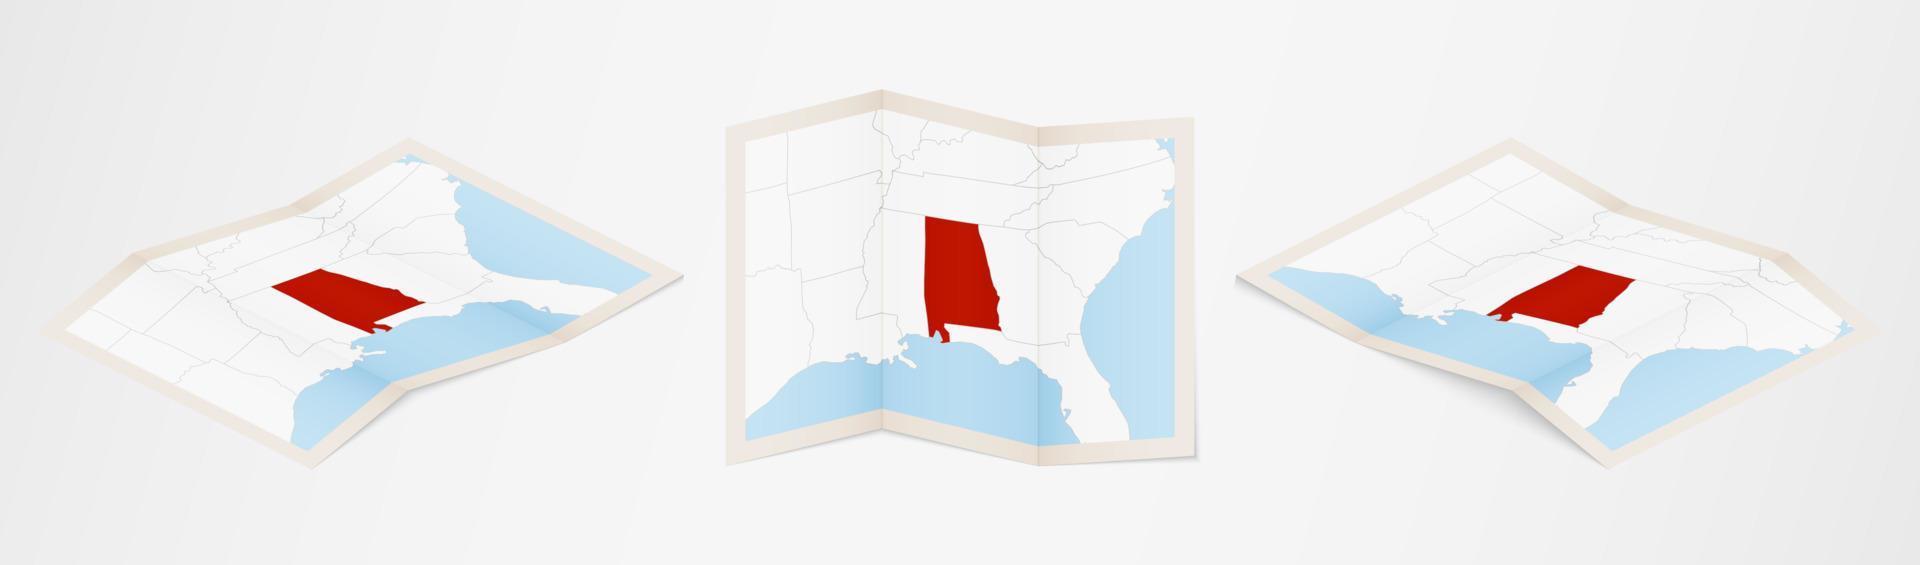 gevouwen kaart van Alabama in drie verschillend versies. vector